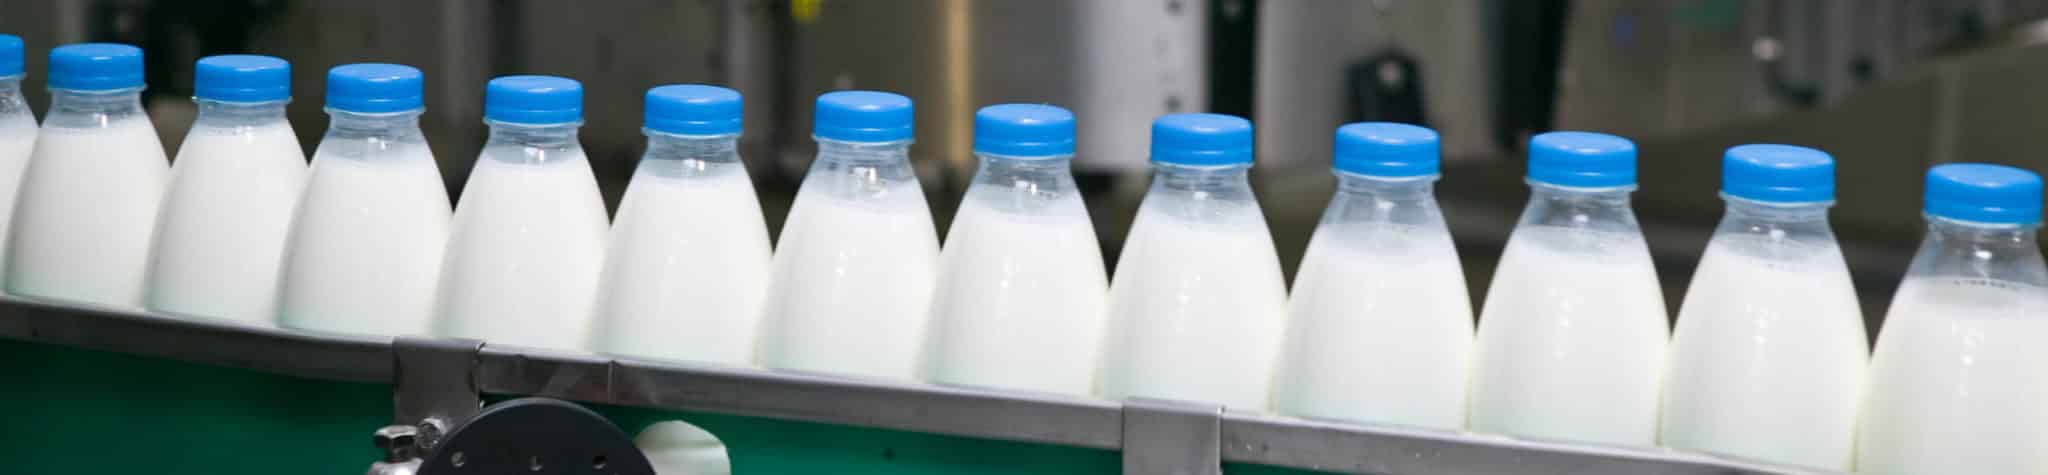 milk bottles on a line